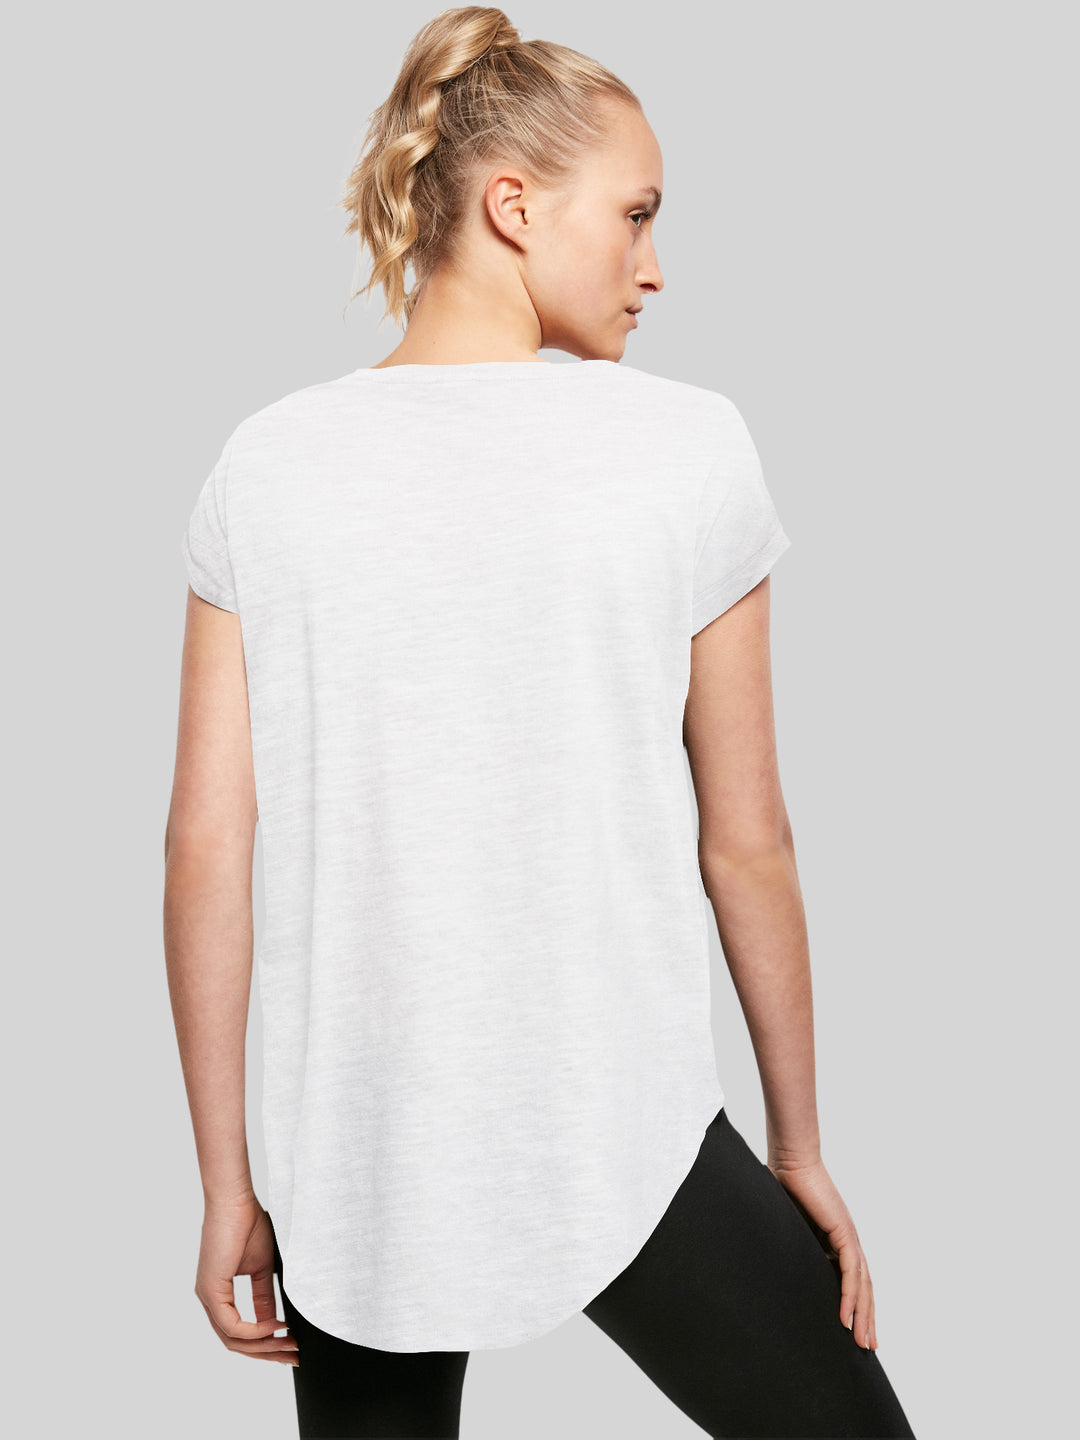 ACDC T-Shirt | Back In Black Logo | Premium Long Ladies Tee